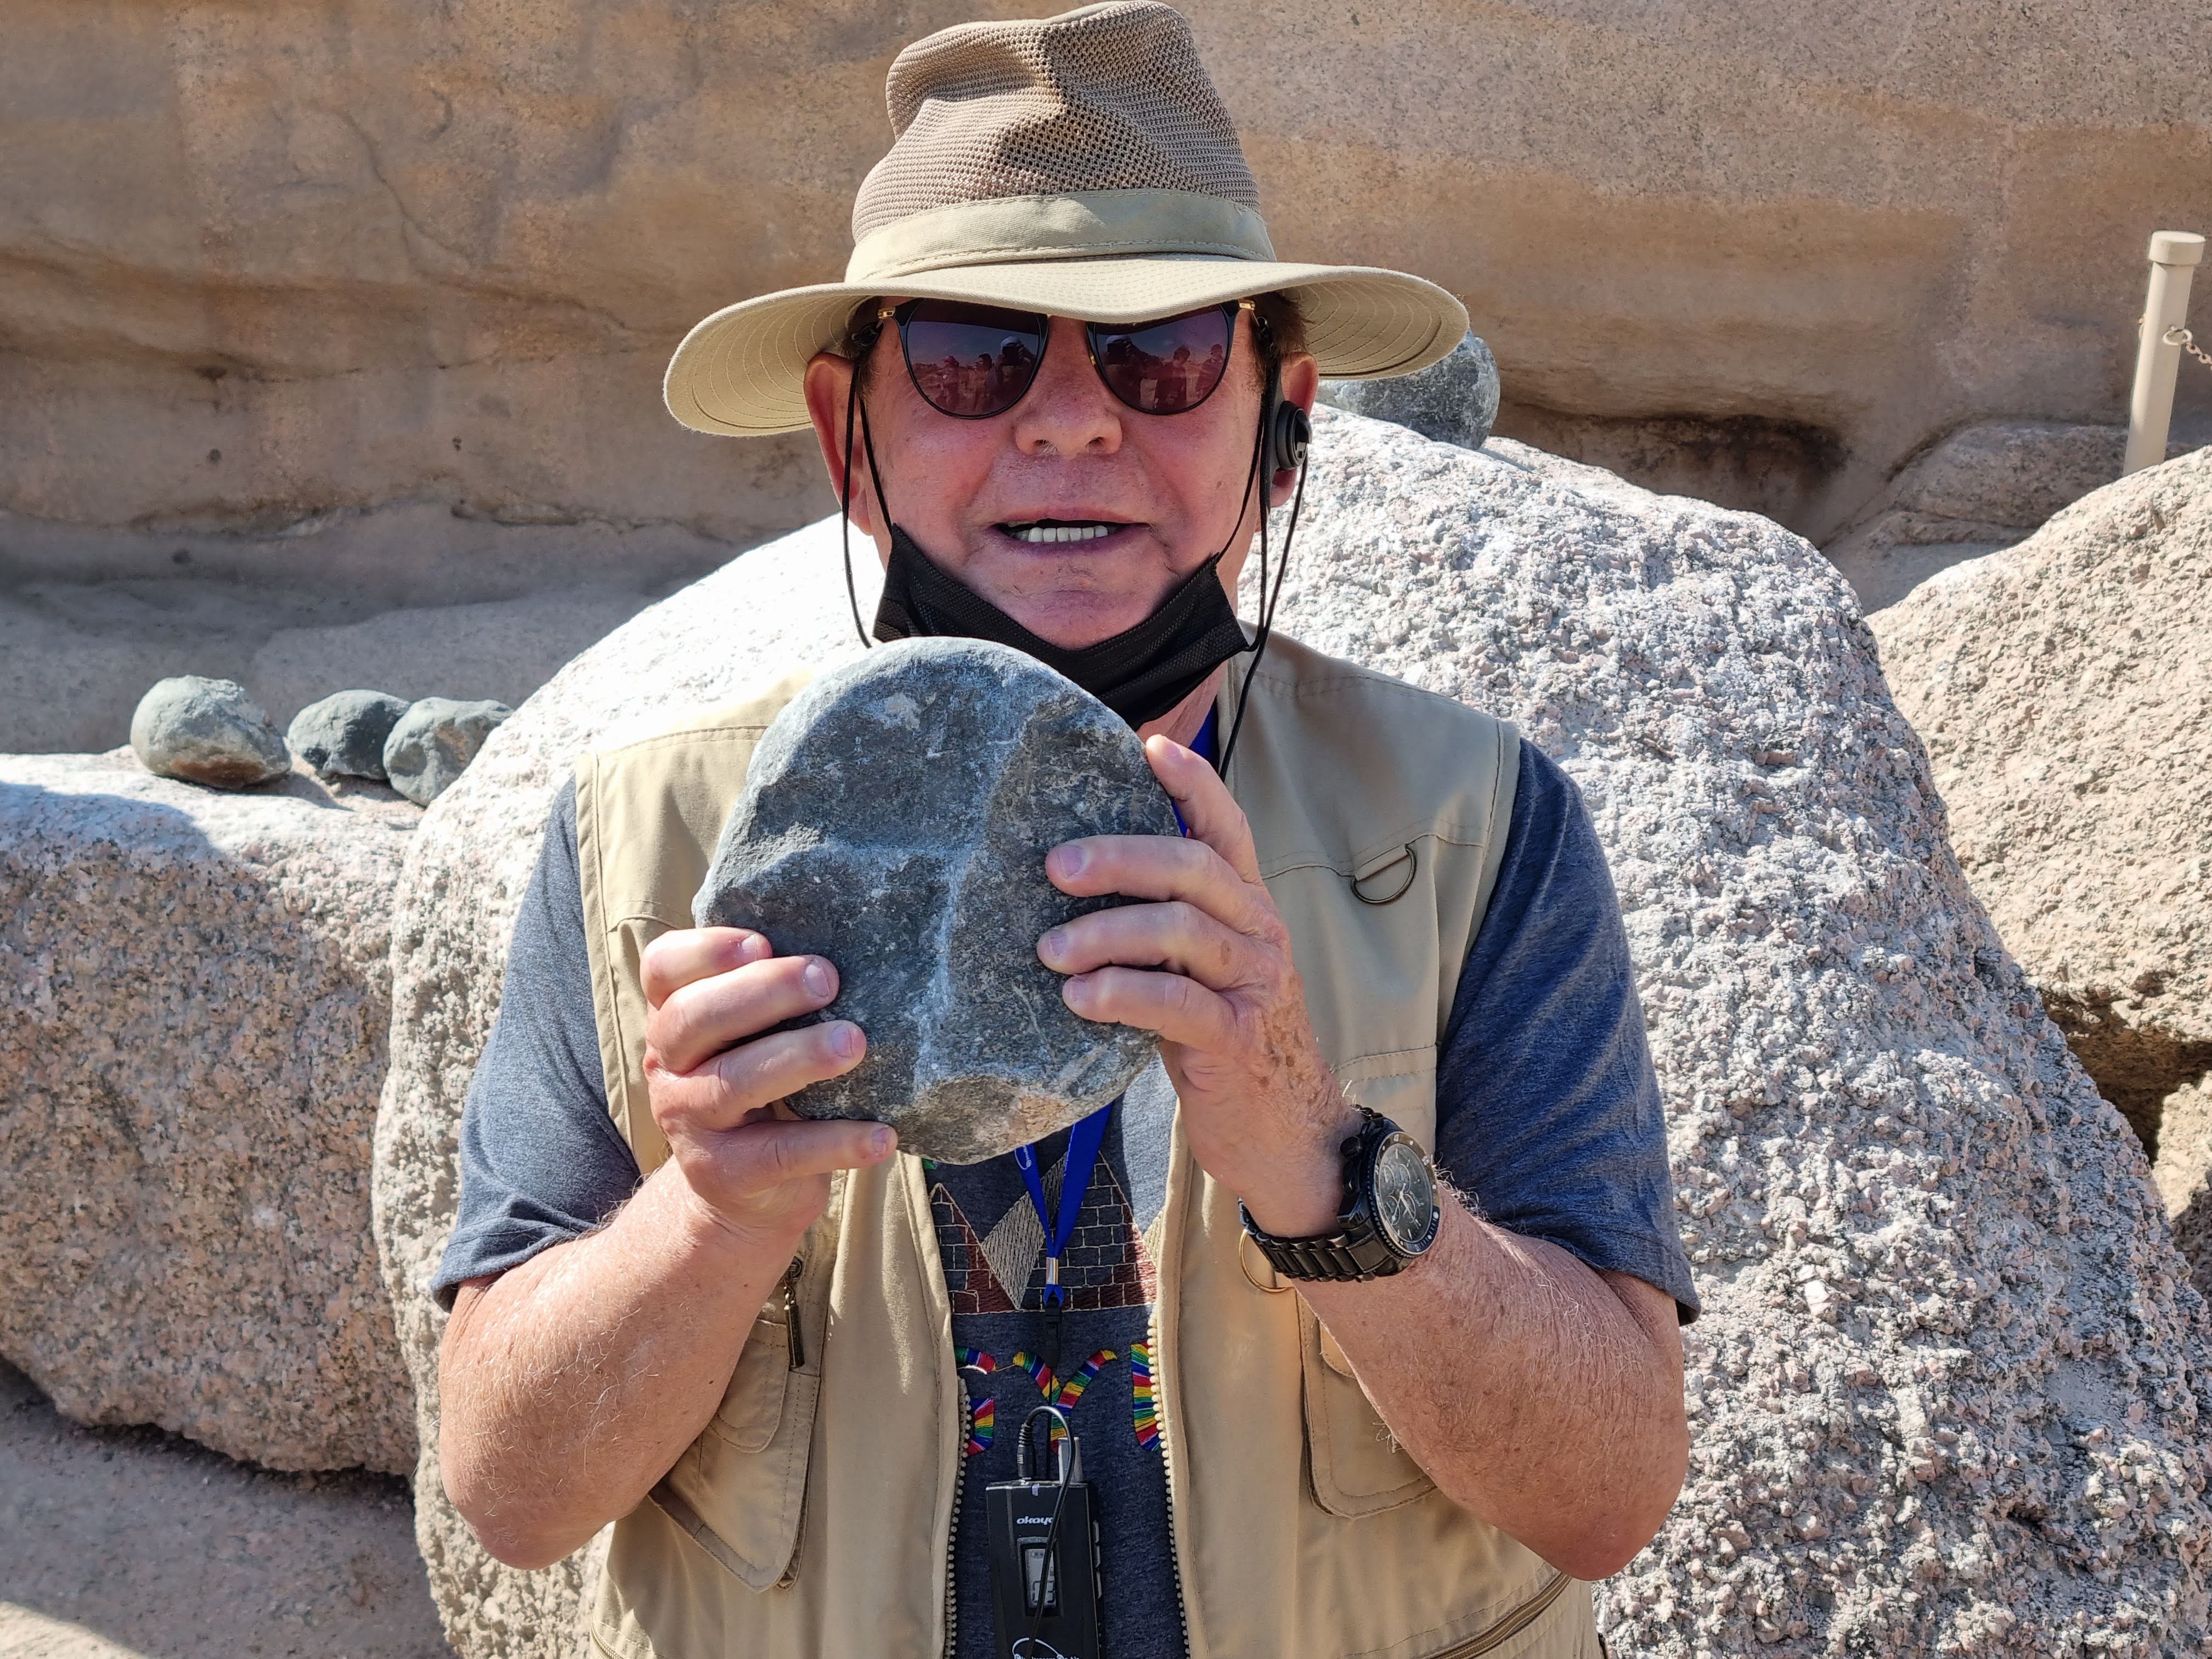 זה קשה אפילו להחזיק את אבן הדיאוריט שלא לדבר לחצוב בגרניט בעזרתה. אז עדיין לא היו להם מכשירי ברזל